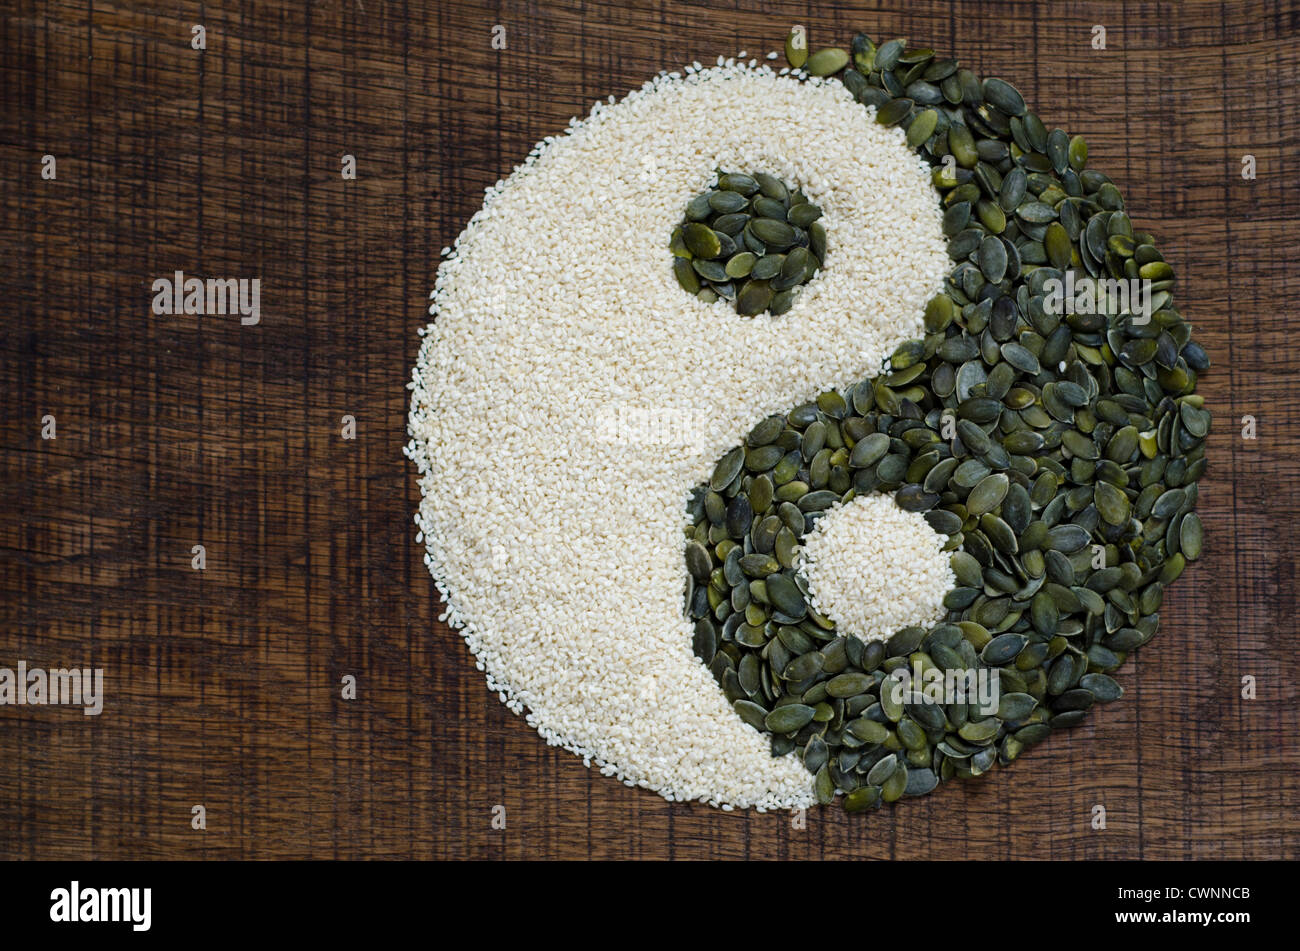 Le Yin Yang créé à partir de graines de citrouille et graines de sésame sur une surface en bois sombre. Banque D'Images